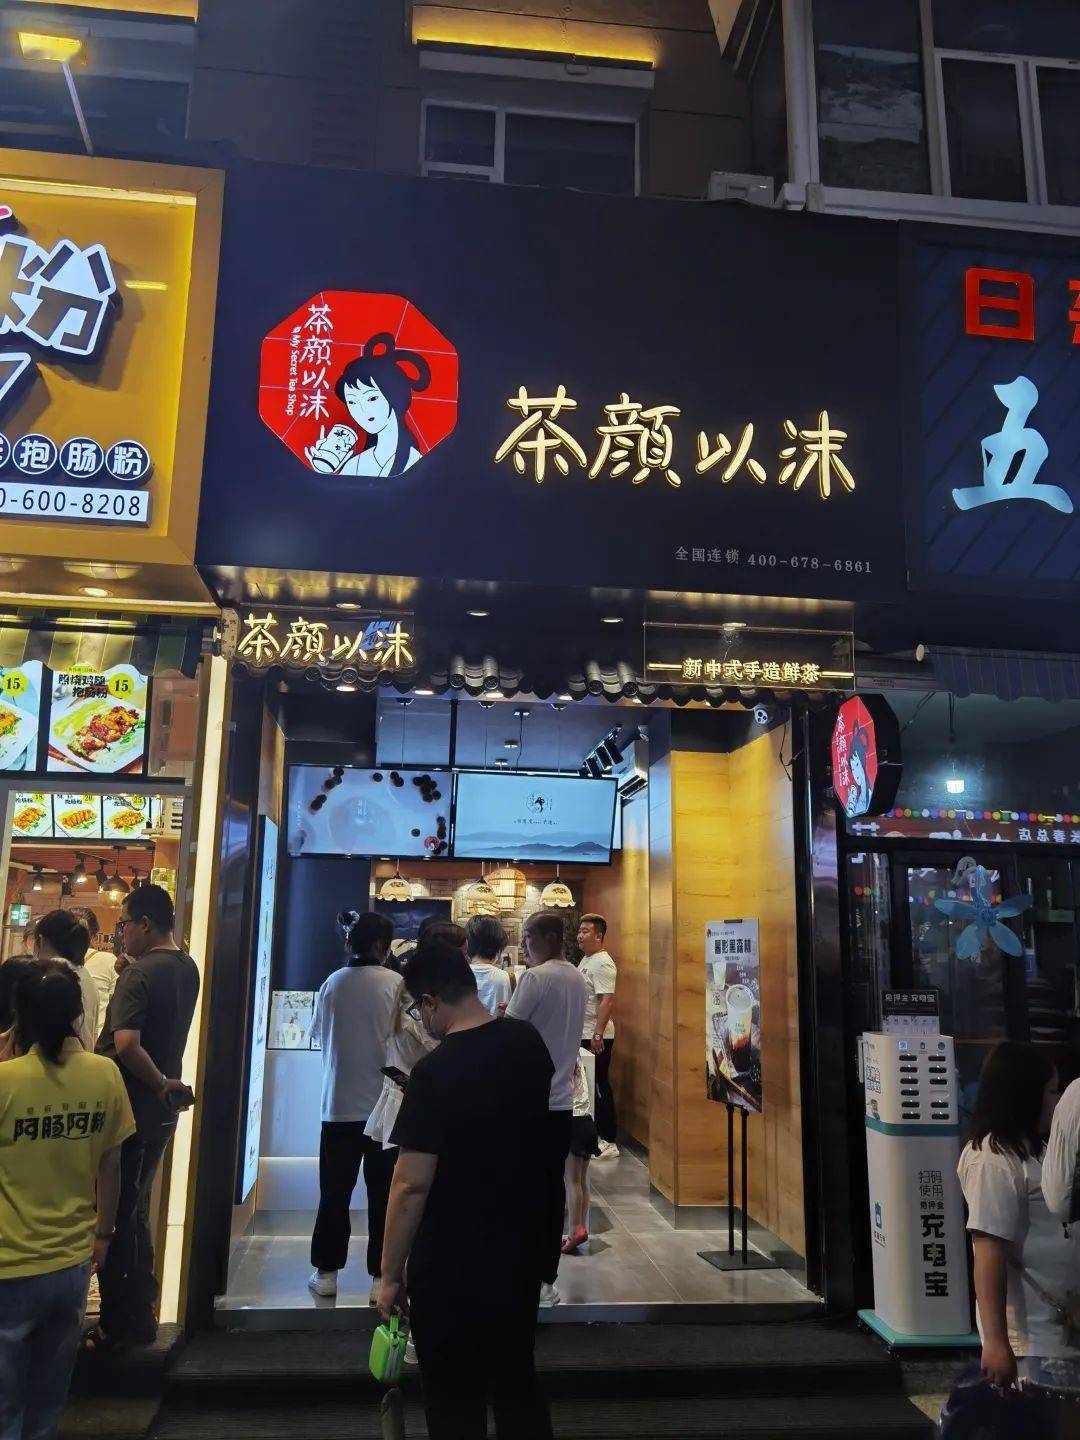 长春桂林路新开了一家奶茶店,装修满满中国风,饮品颜值也是超级高